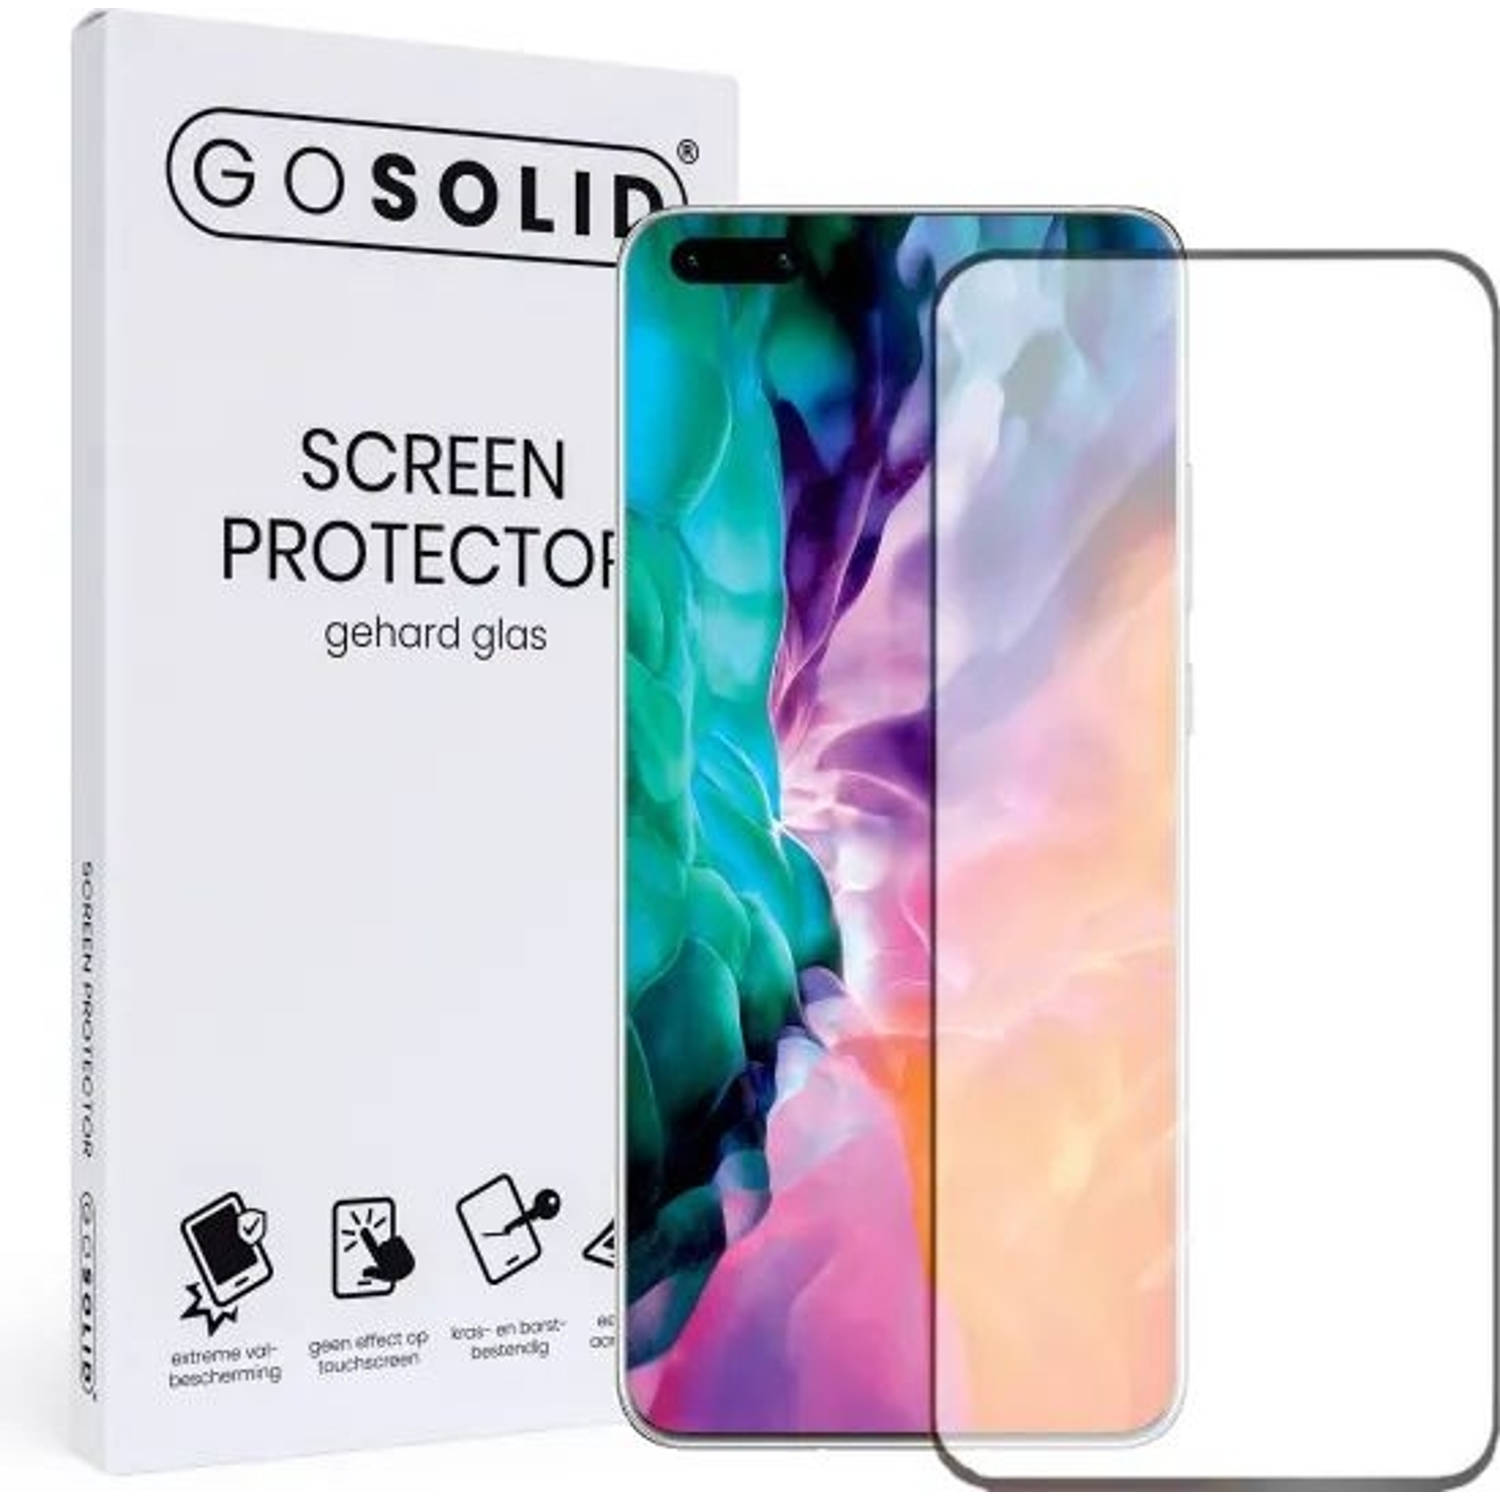 Go Solid! Screenprotector Voor Huawei P40 Pro